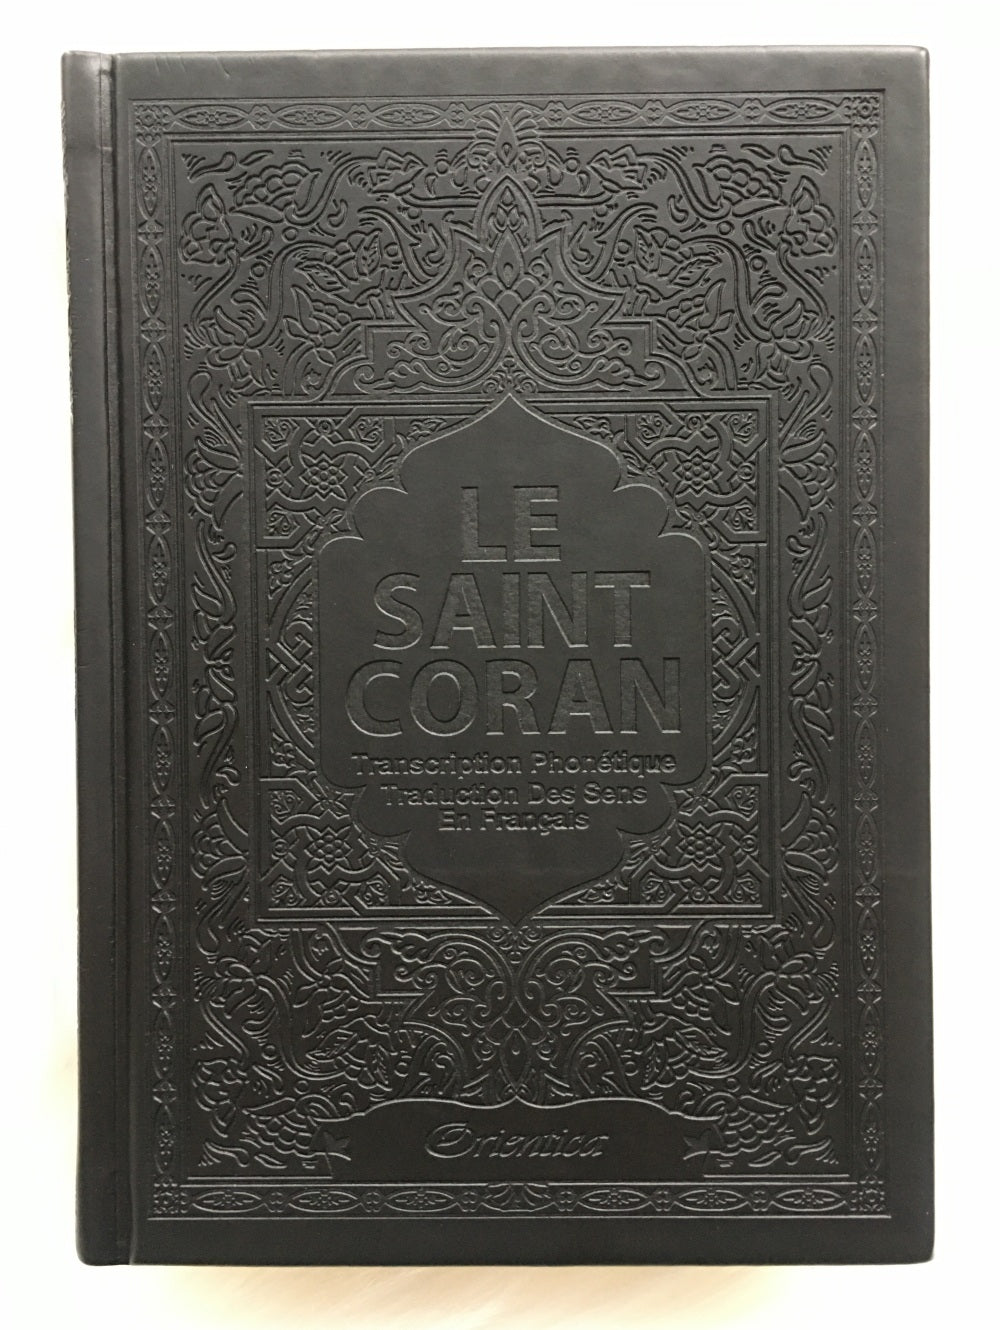 Le Saint Coran - Transcription (phonétique) en caractères latins et Traduction des sens en français - Edition de luxe (Couverture cuir de couleur Grise)